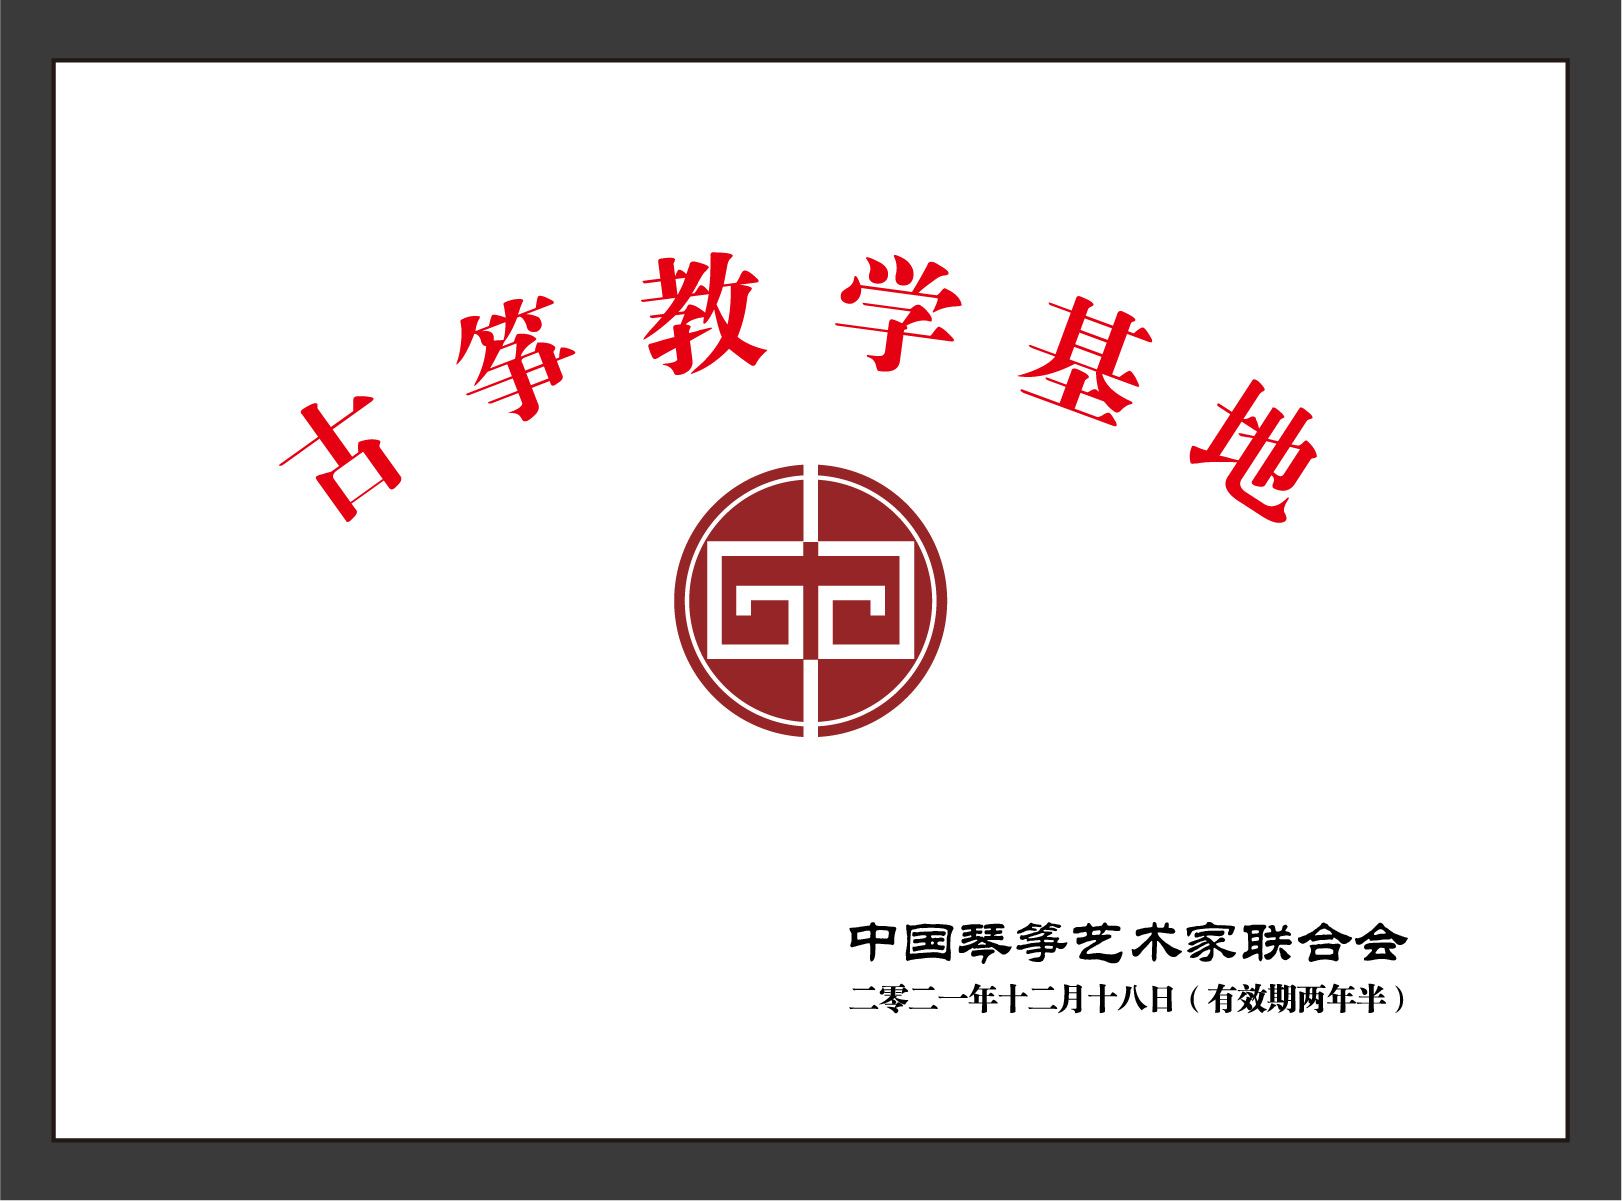 中国琴筝艺术协会